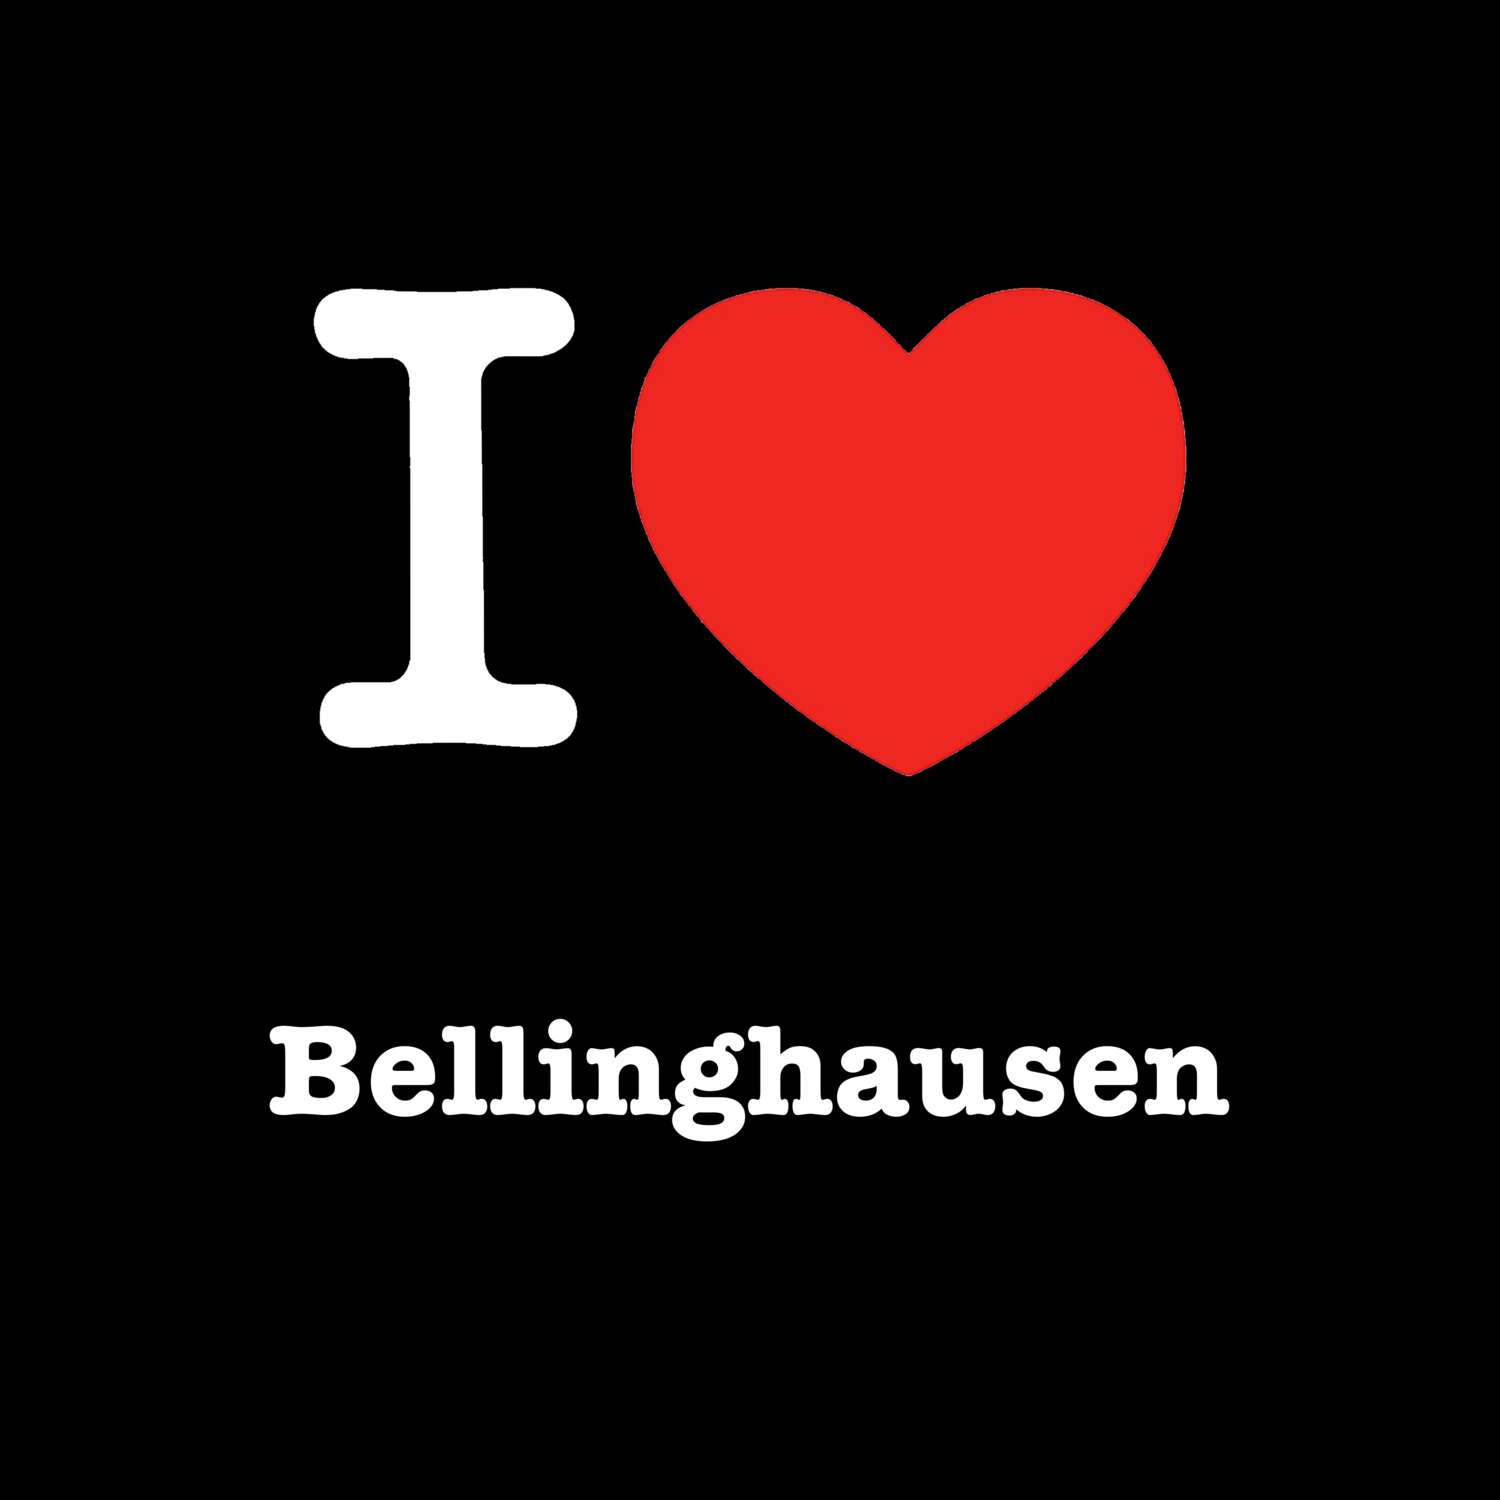 Bellinghausen T-Shirt »I love«